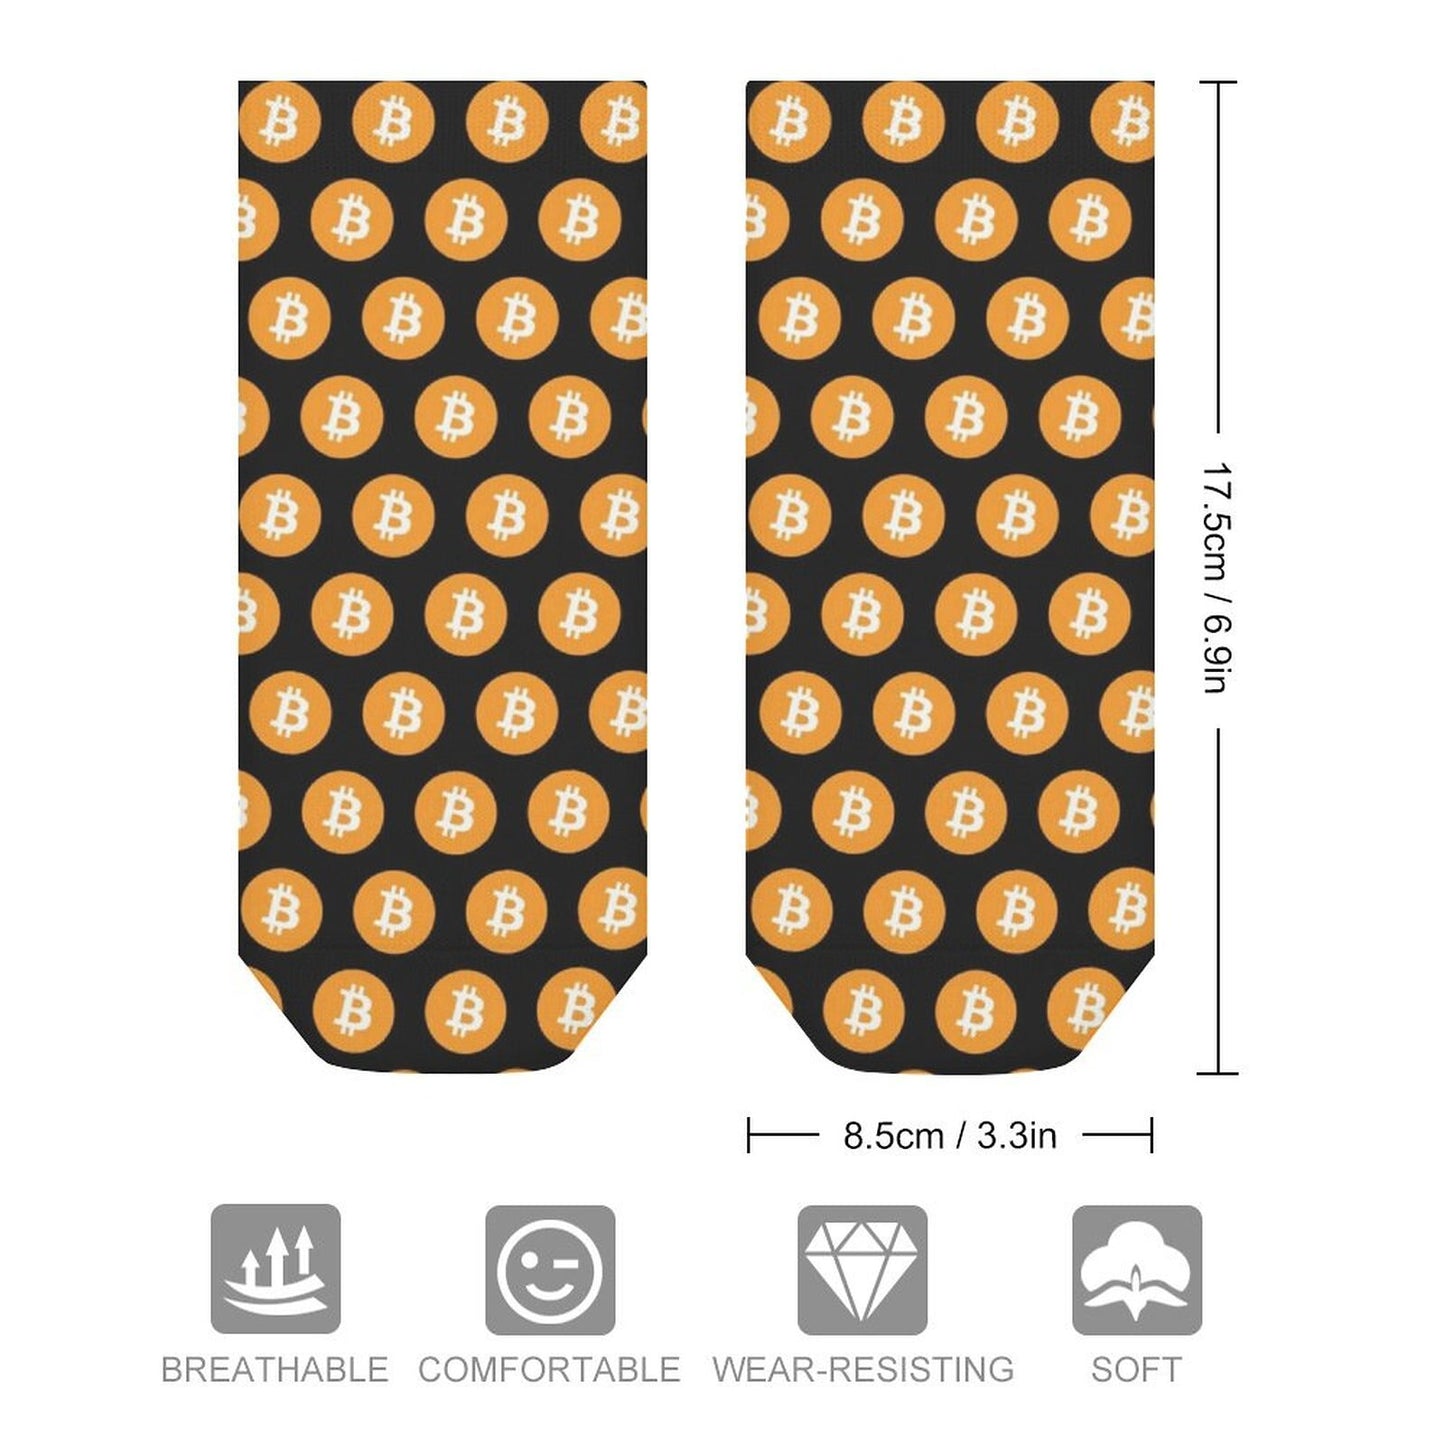 Bitcoin Socks